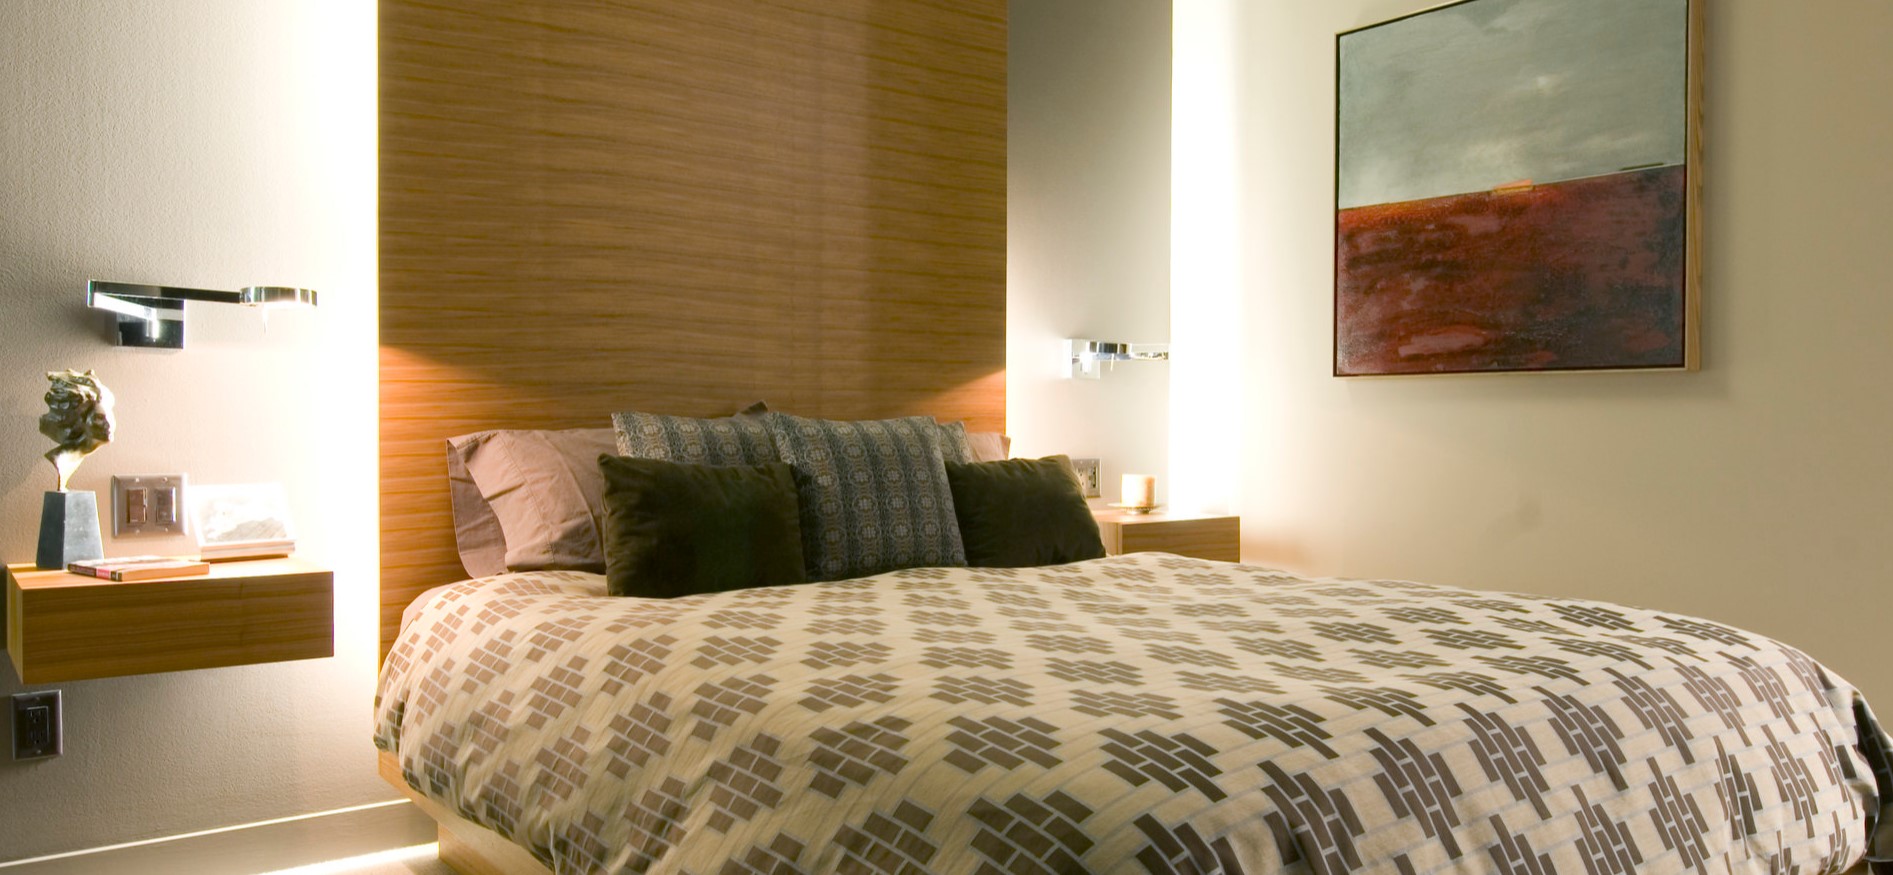 Кровать можно декорировать подушками с современным орнаментом